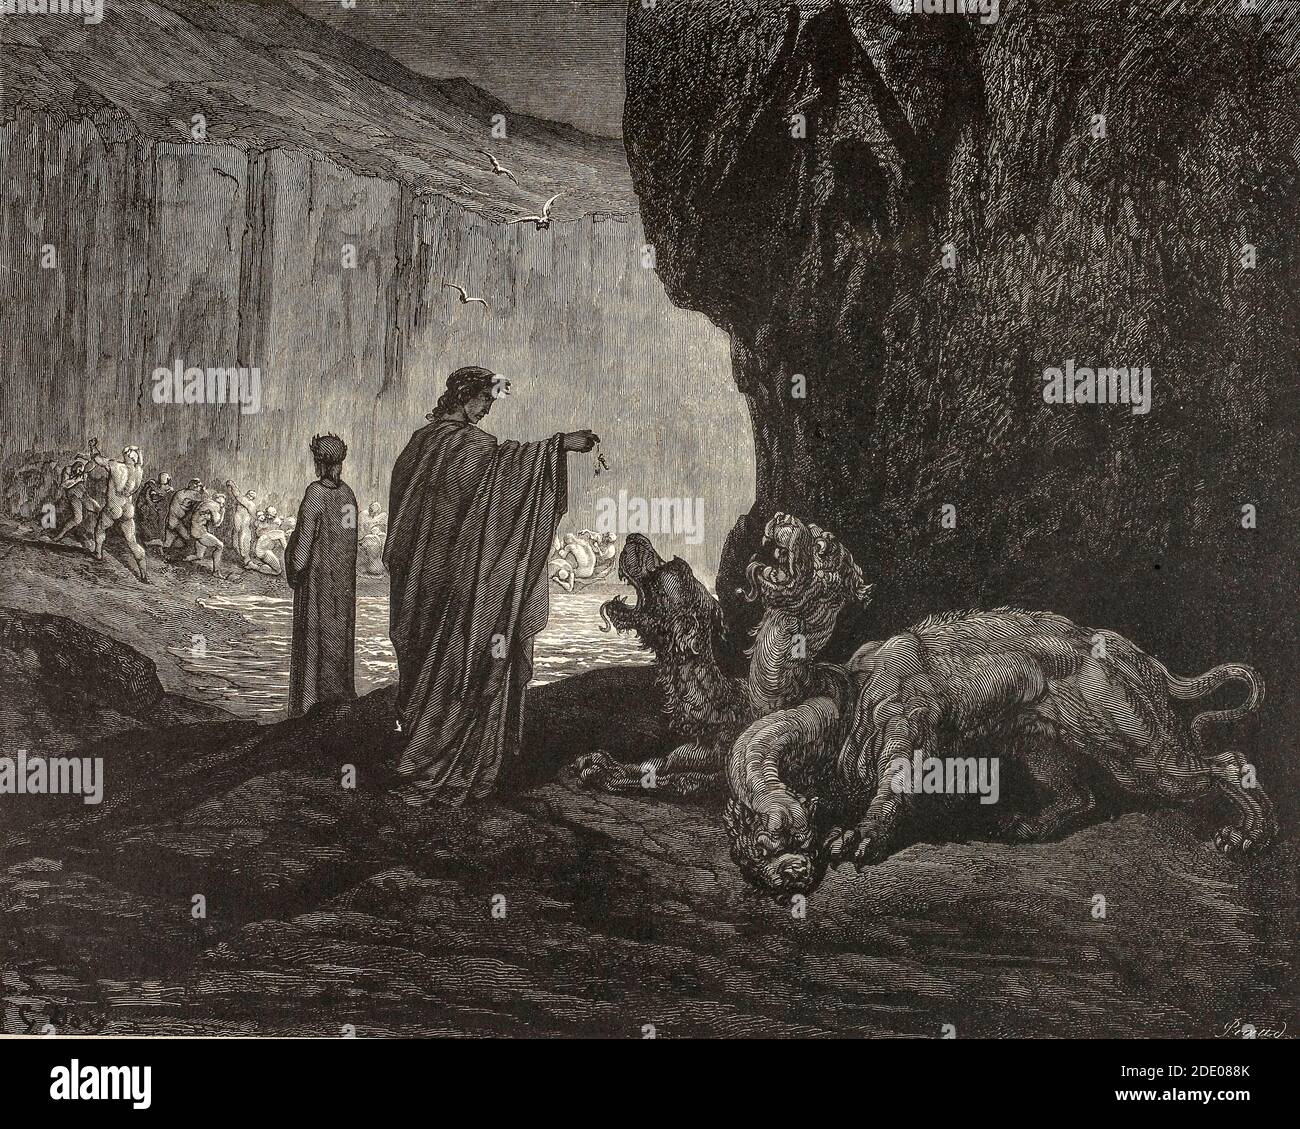 Dante Divina Commedia - Enfer -Dante rencontre Cerberus, un personnage de la mythologie grecque, l'un des monstres qui gardent l'entrée du monde sous-jacent sur lequel le dieu Hades régna - Canto VI - illustration de Gustave Dorè Banque D'Images